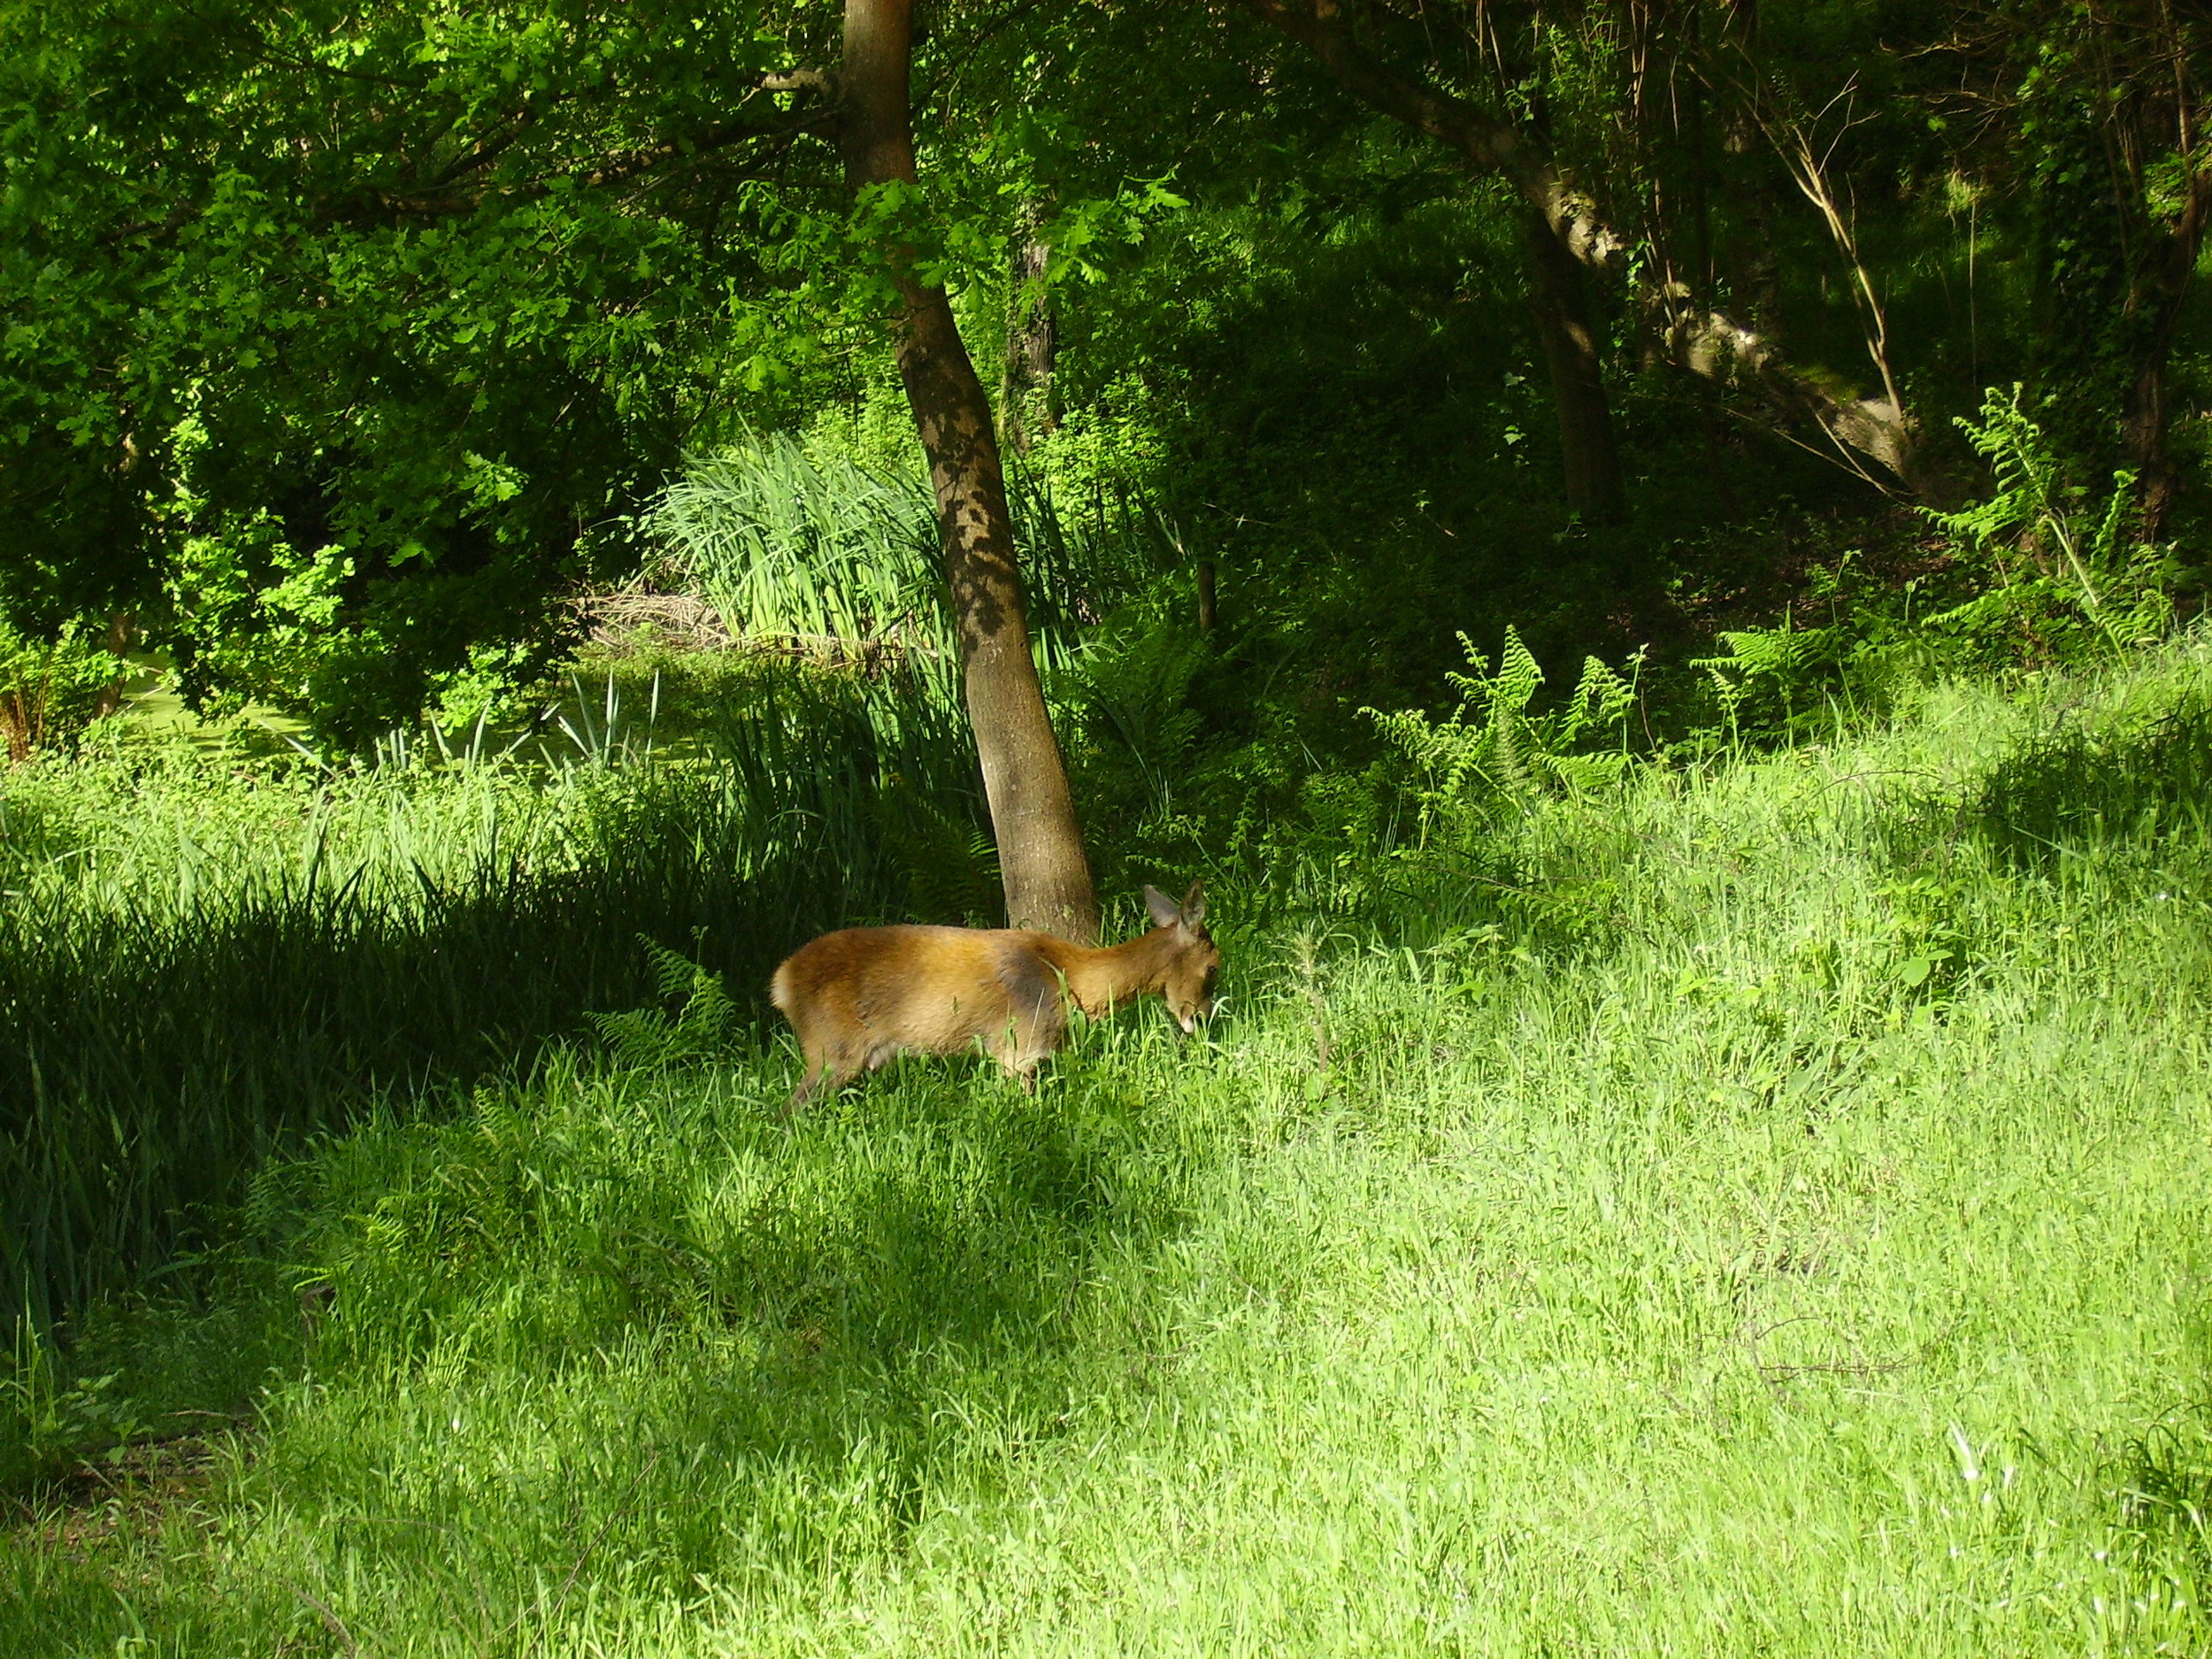   A Roe Deer.  